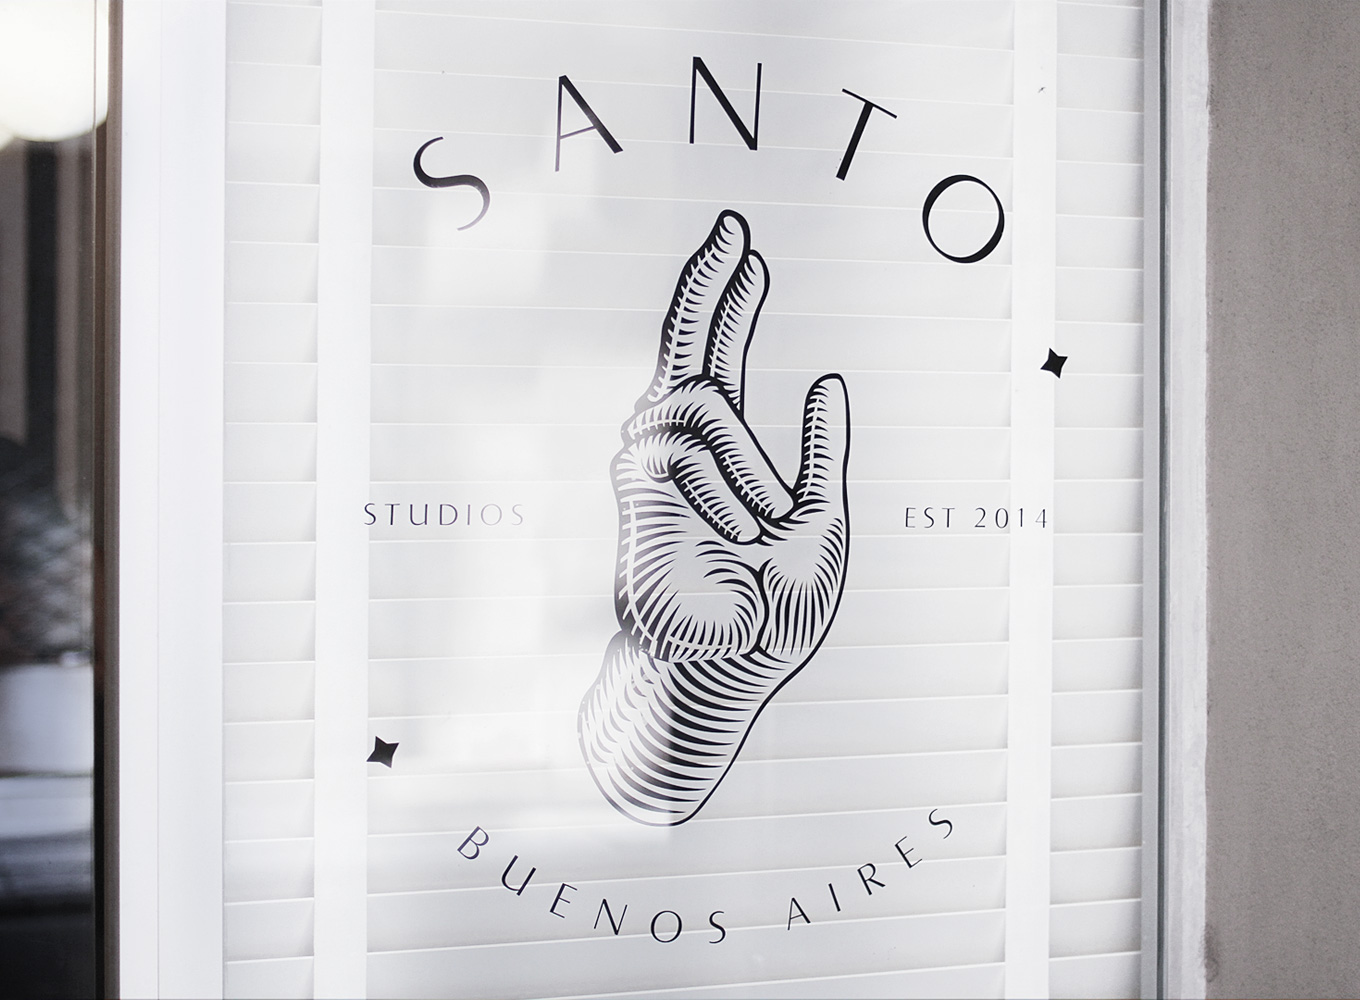 Santo Studios Branding